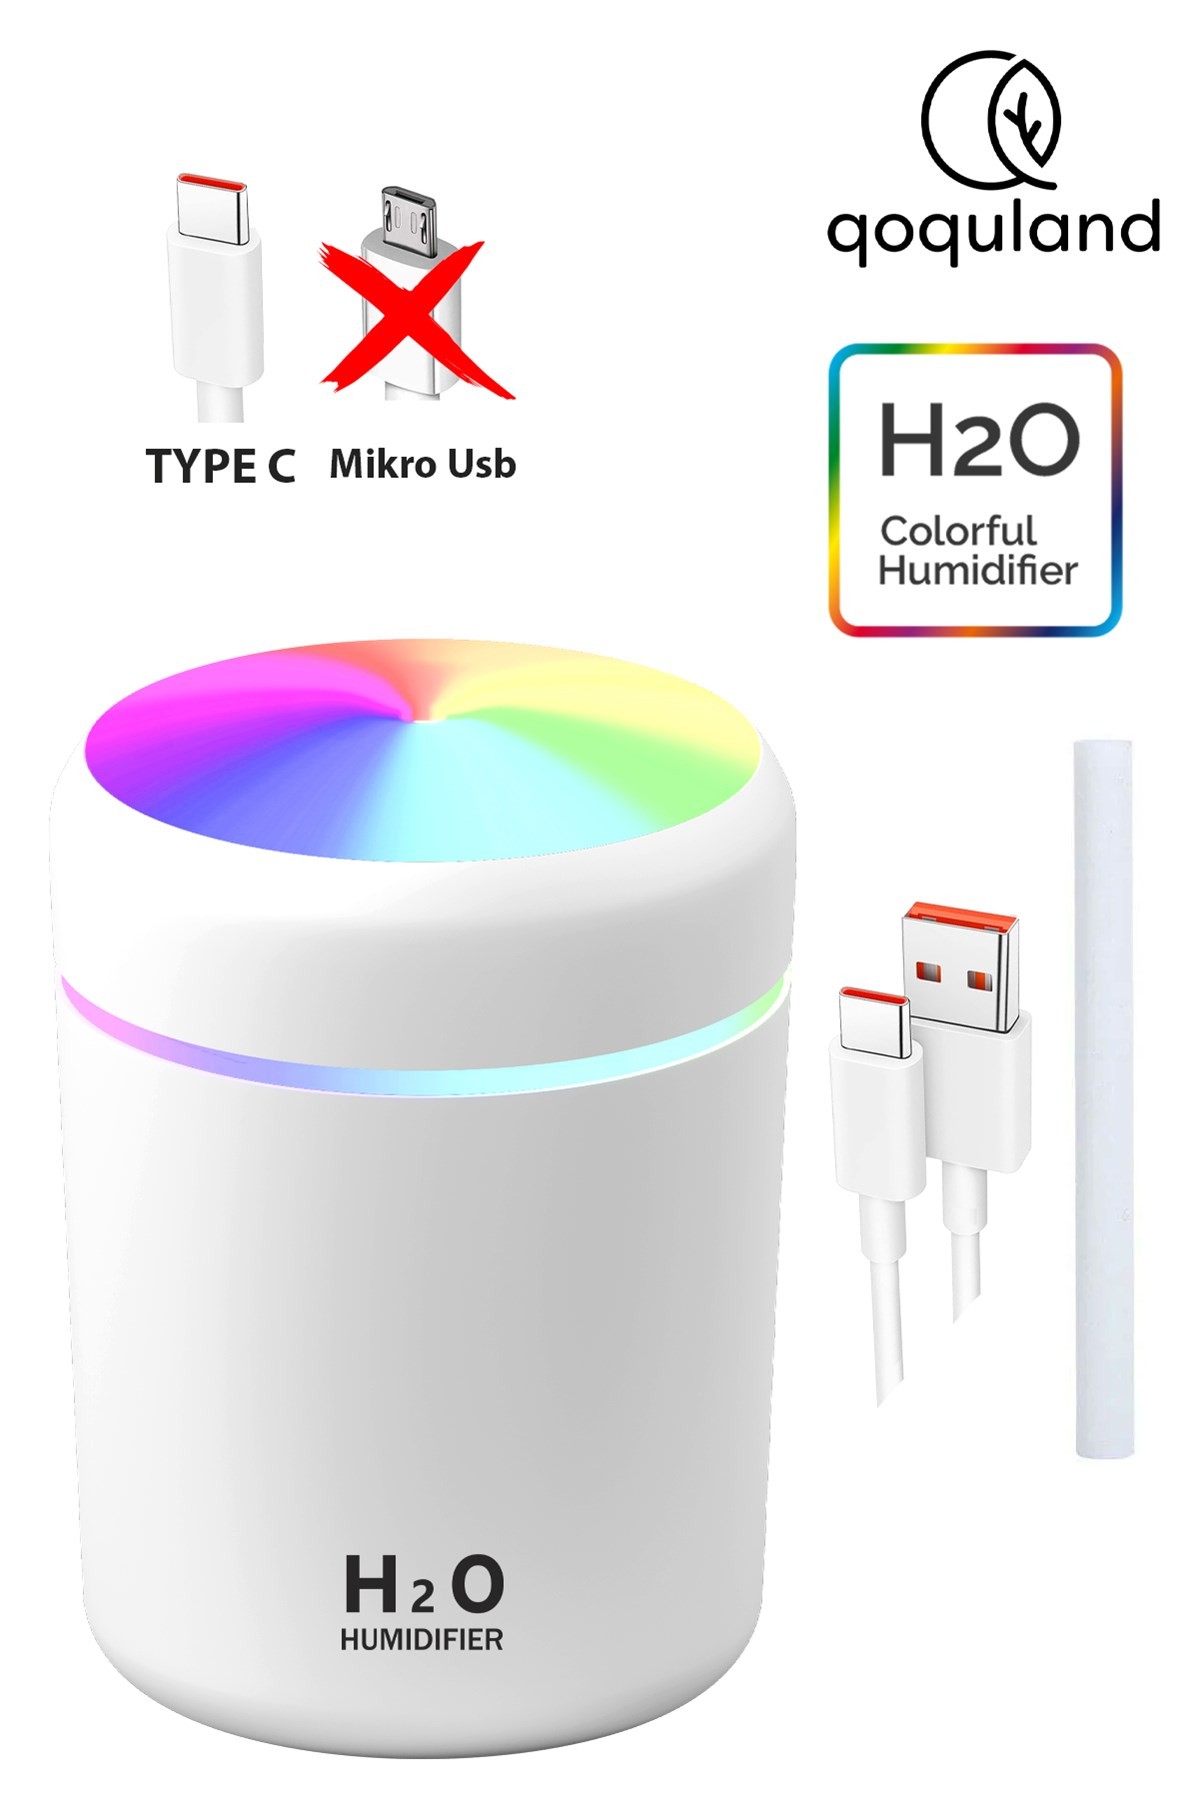 H2o 300 ml Type C Girişli Ultrasonik Hava Nemlendirici Ve Aroma Difüzörü H2o Type C Girişli